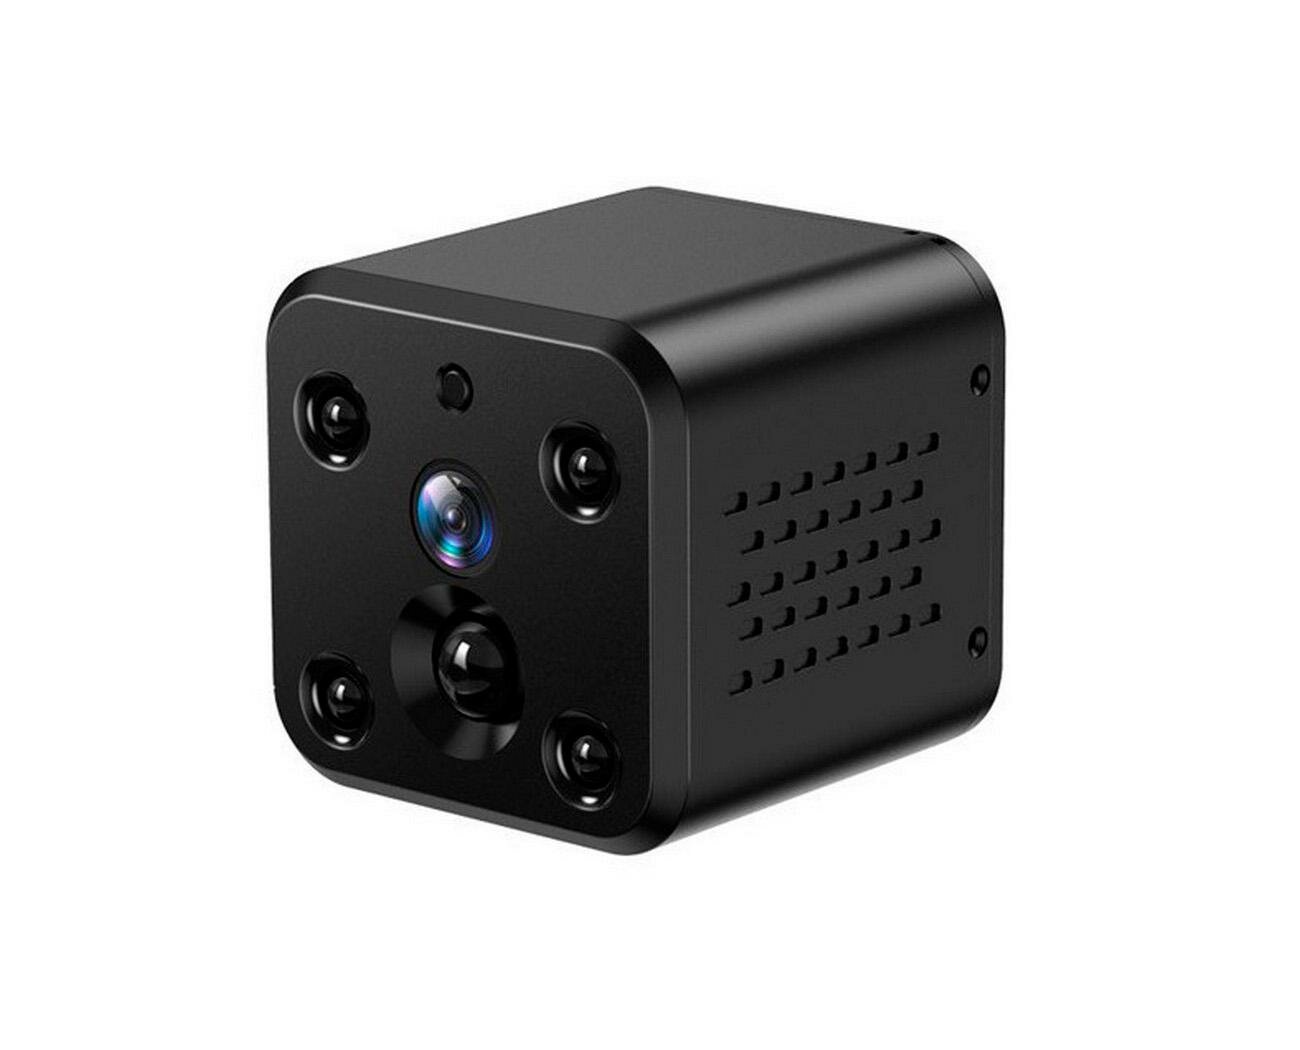 Автономная 4mp маленькая беспроводная Wi-Fi IP видеокамера наблюдения JMC-AV13 (2560х1440) (O46494MI) с ИК датчиком движения. Определение тела человек